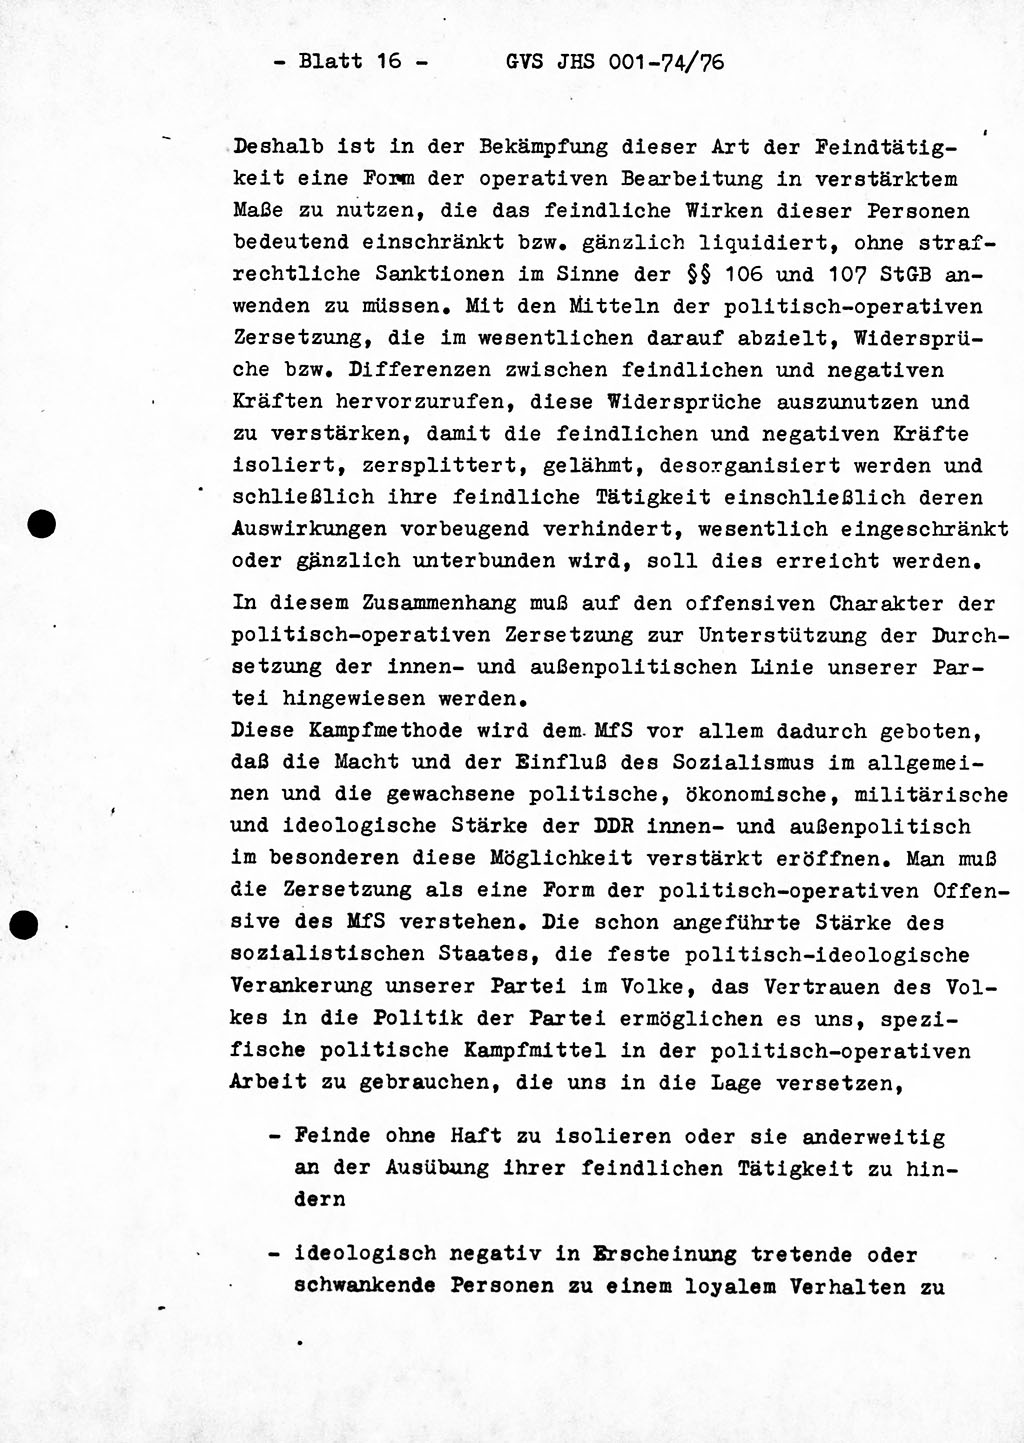 Diplomarbeit Hauptmann Joachim Tischendorf (HA ⅩⅩ), Ministerium für Staatssicherheit (MfS) der Deutschen Demokratischen Republik (DDR), Juristische Hochschule (JHS), Geheime Verschlußsache (GVS) 001-74/76, Potsdam 1976, Seite 16 (Dipl.-Arb. MfS DDR JHS GVS 001-74/76 1976, S. 16)